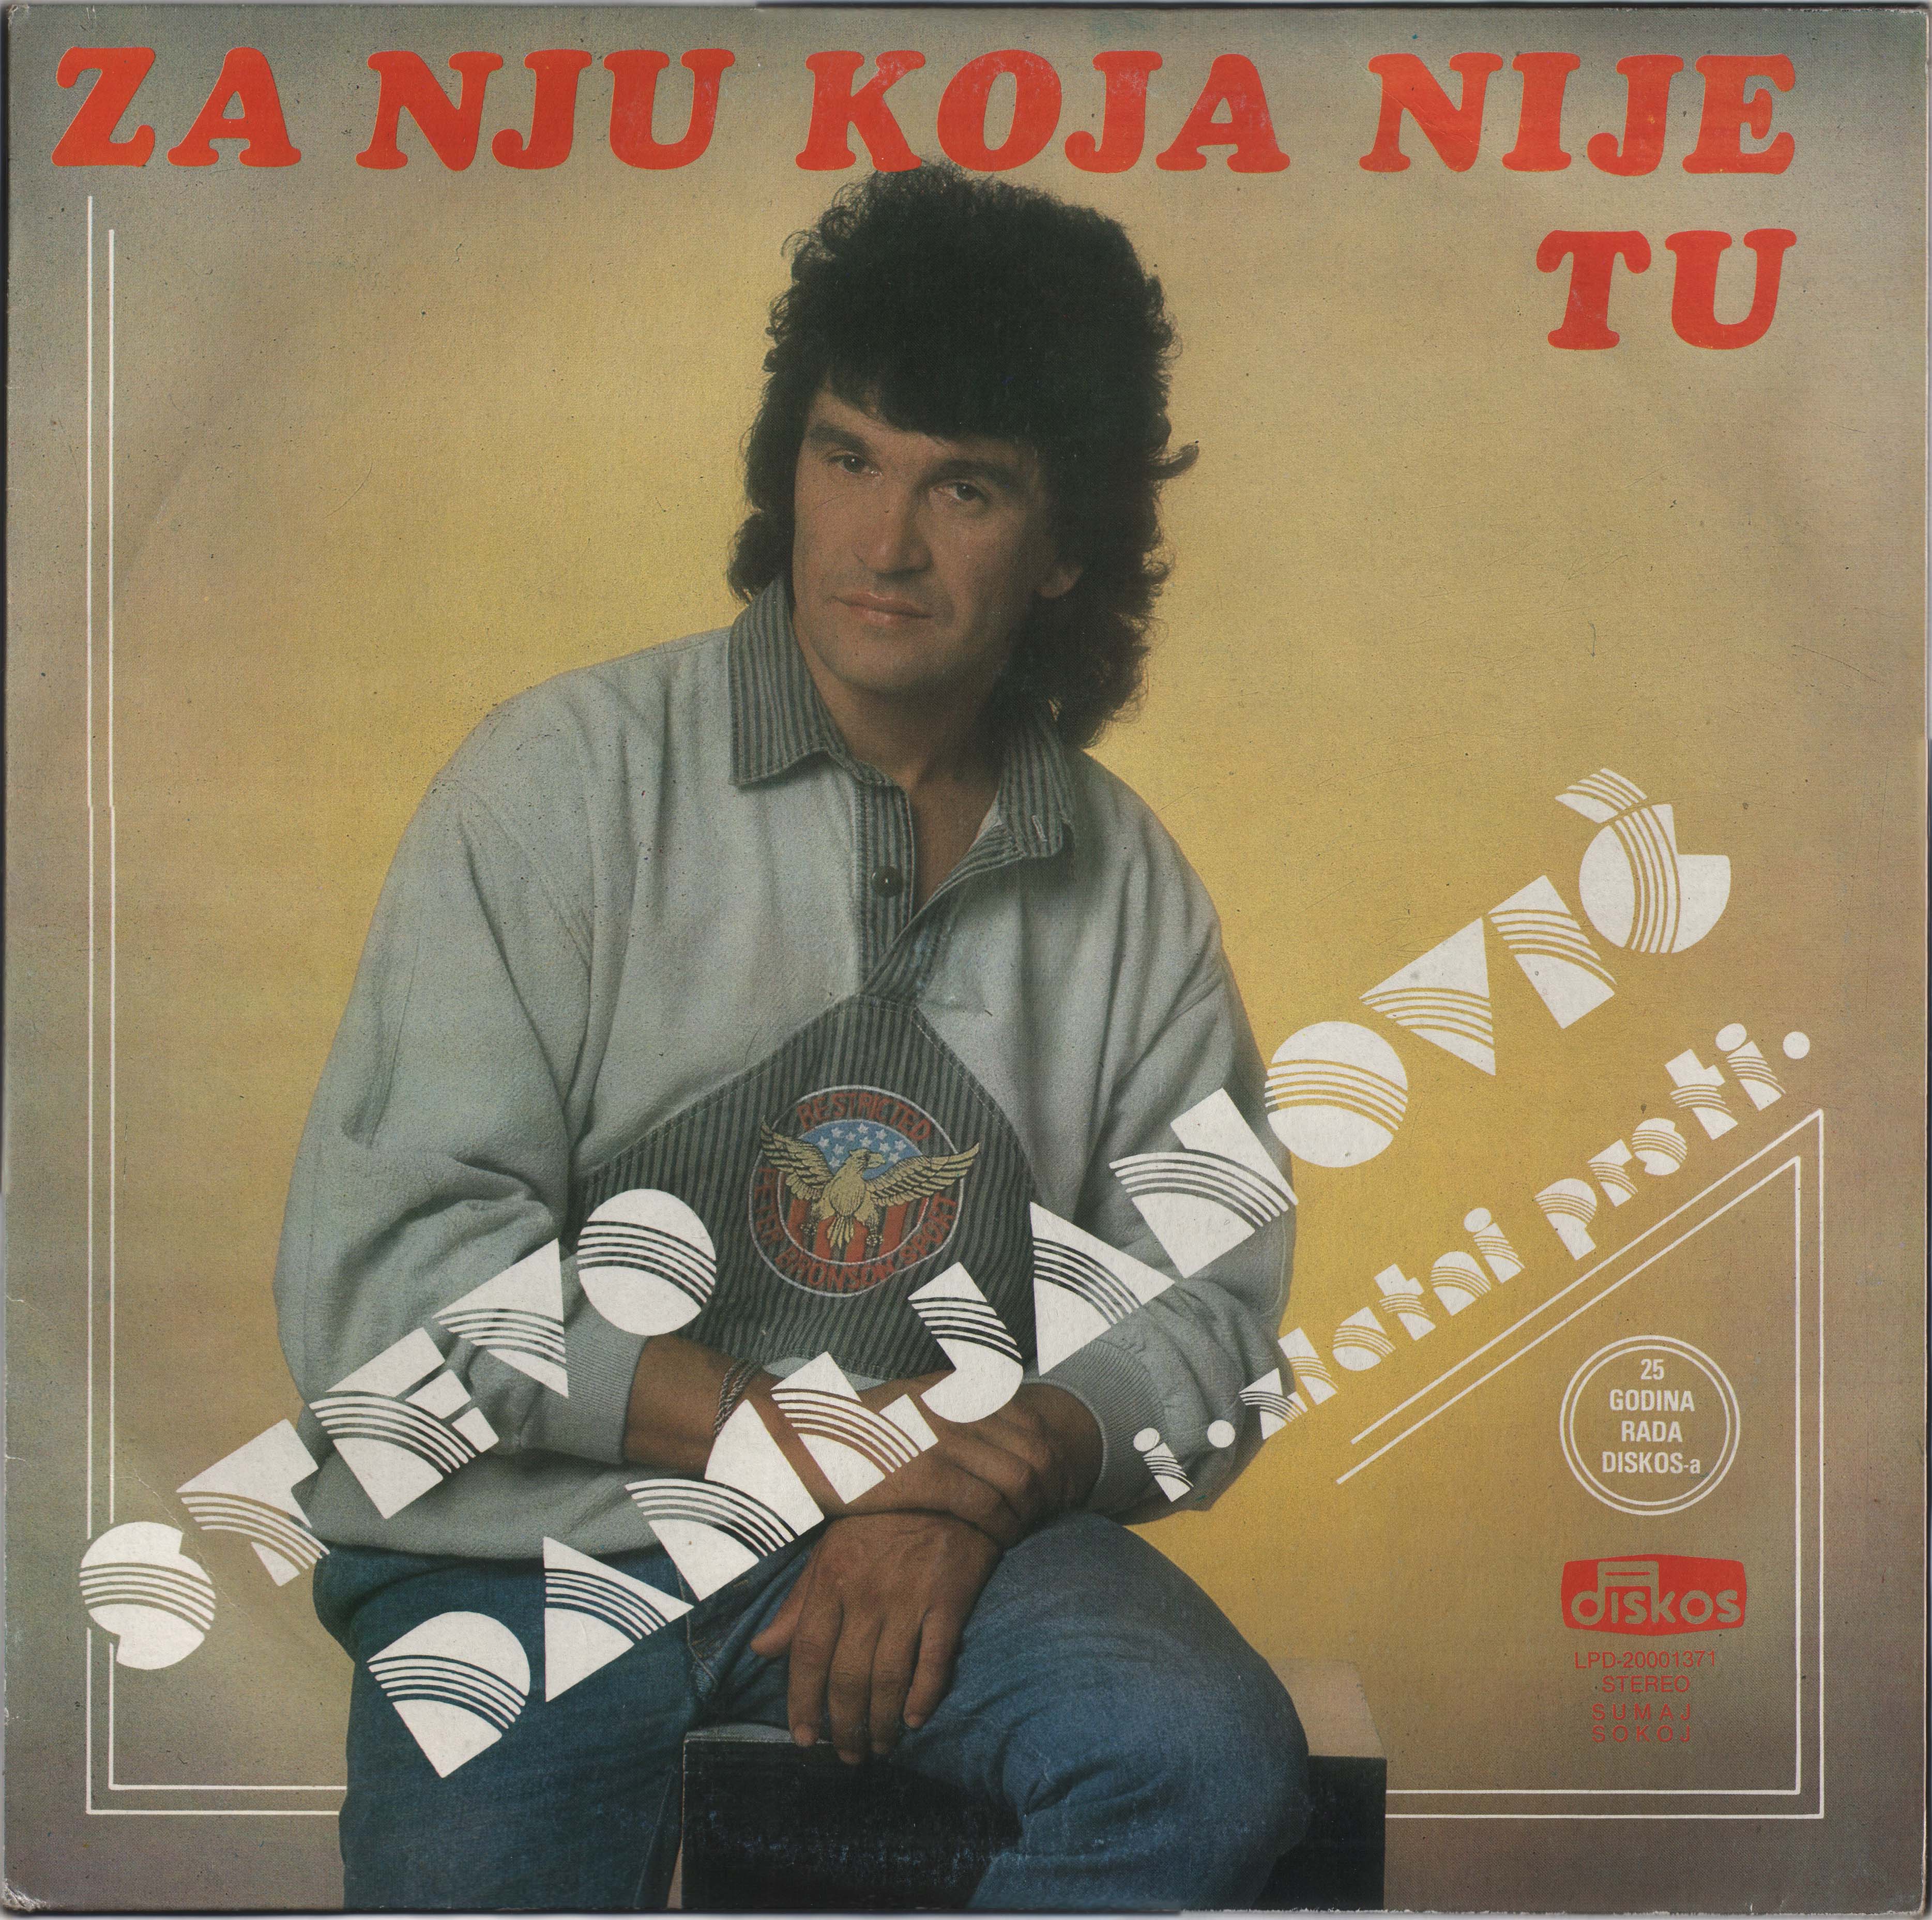 Stevo Damljanovic 1988 P